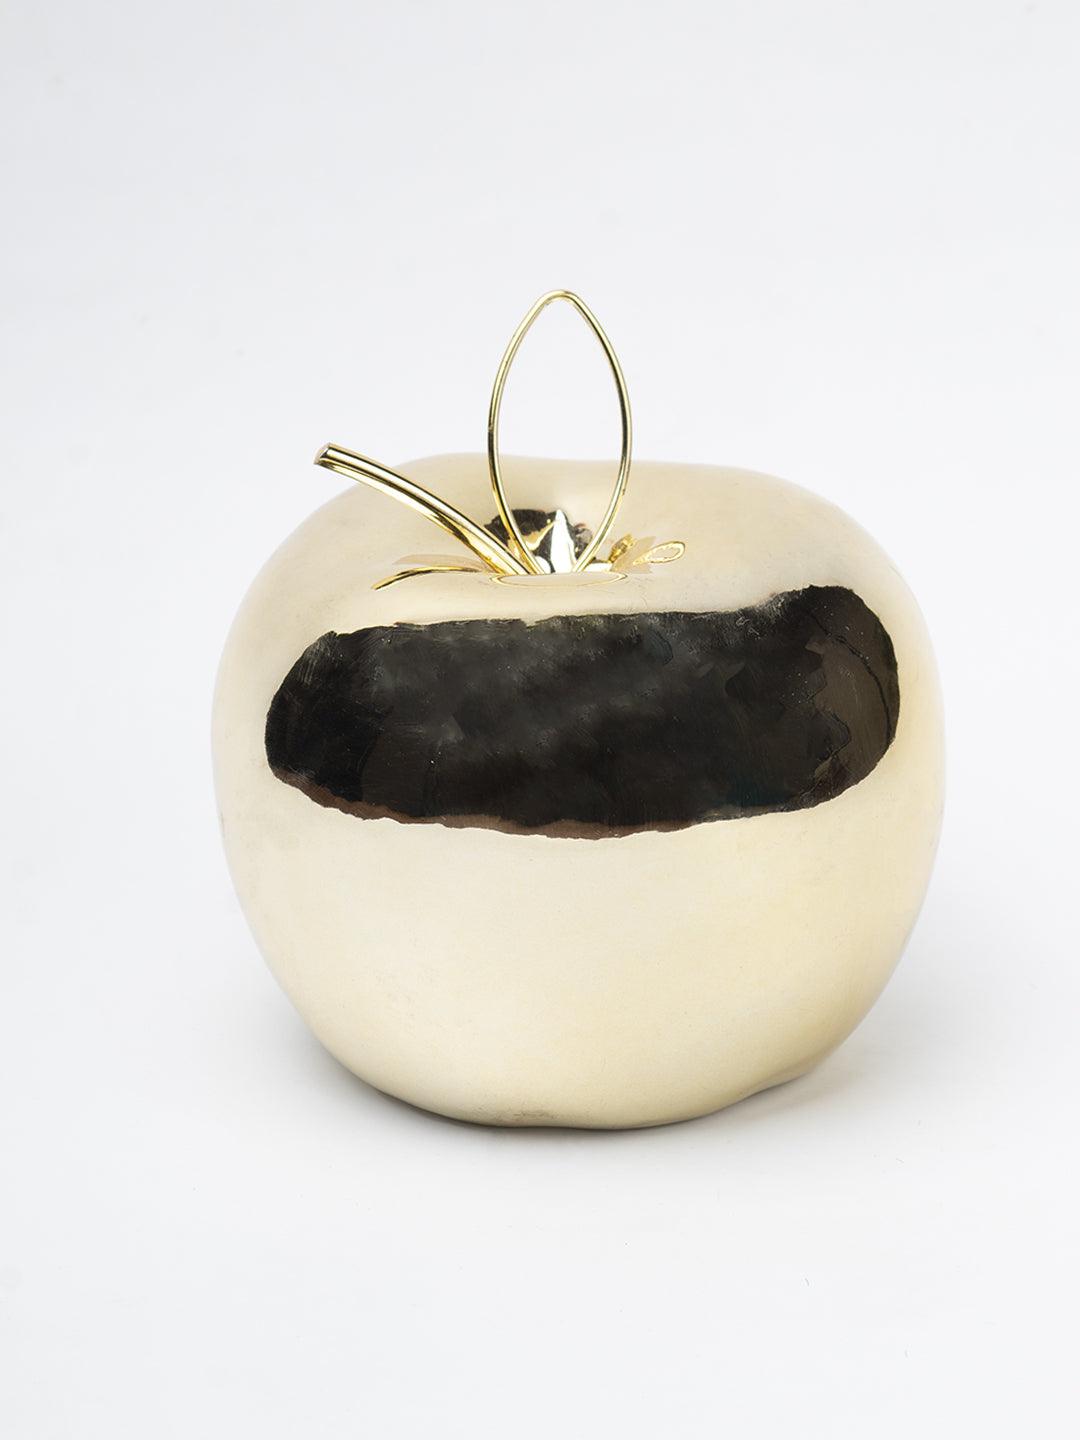 Ceramic Apple sculpture - Golden Décor Ornament - 2